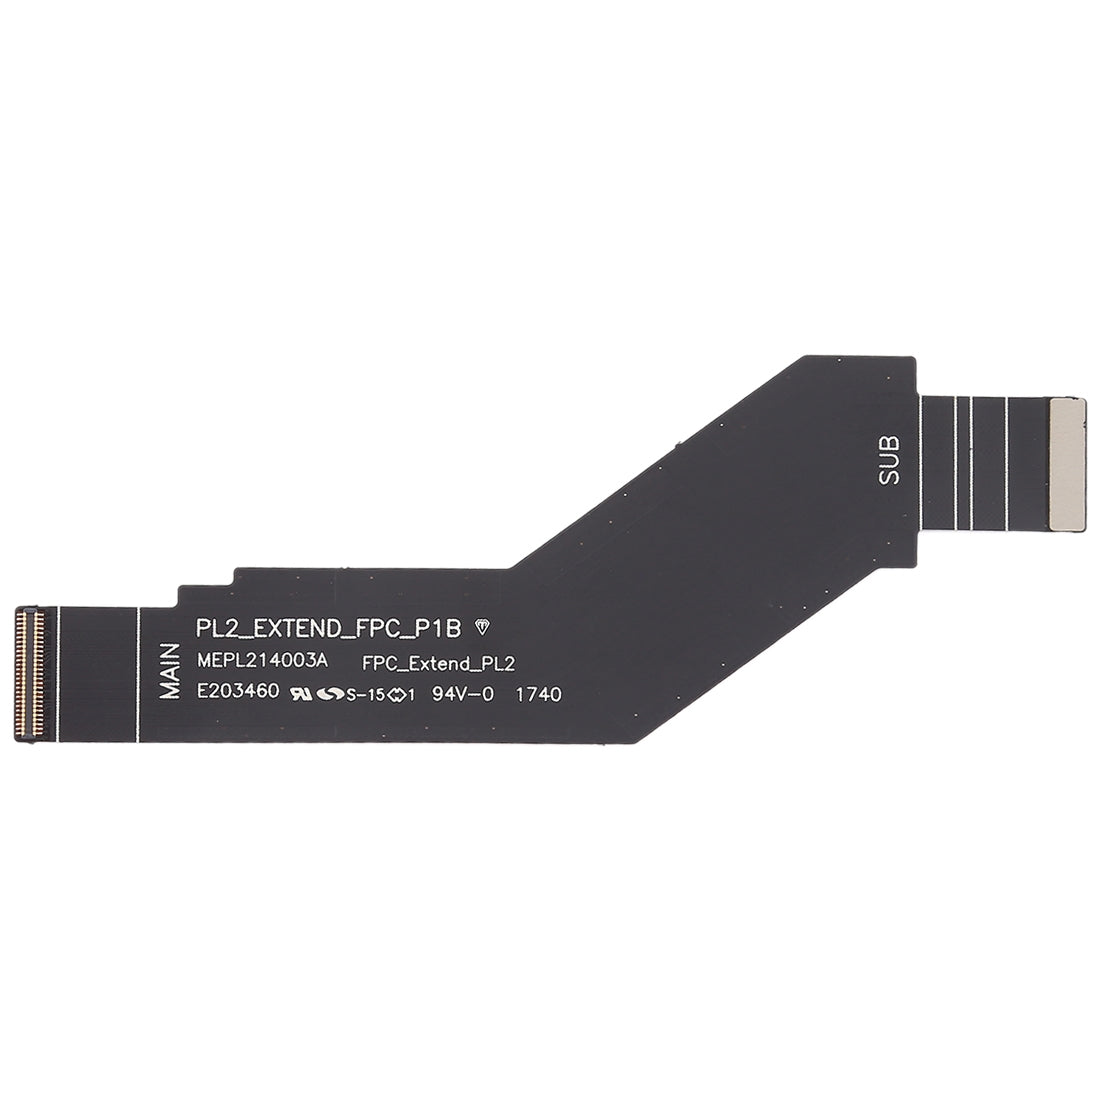 Flex Cable Conector de Placa Nokia 6 2018 6.1 SCTA-1043 TA-1045 TA-1050 TA-1054